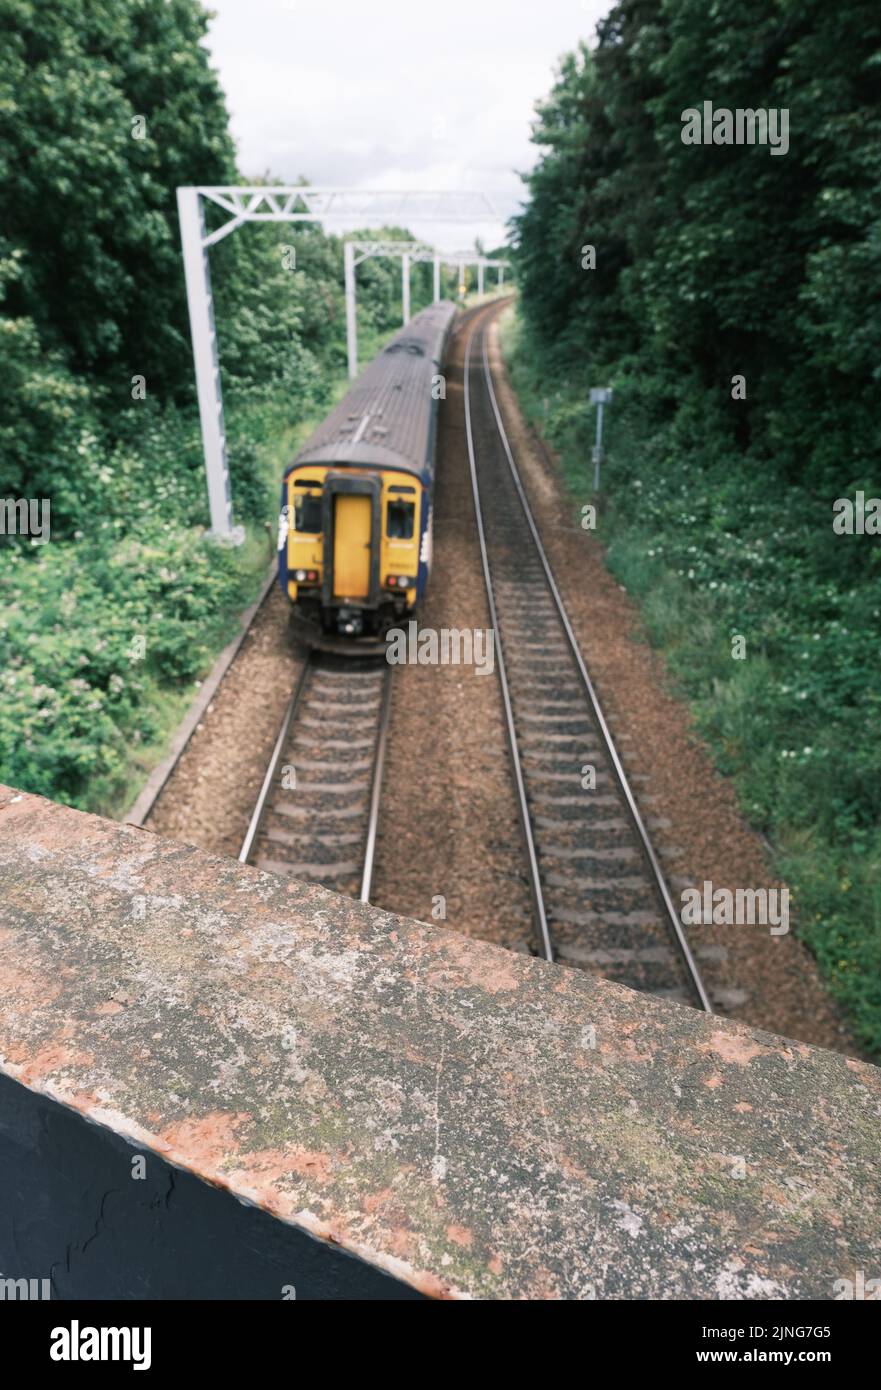 Image de style rétro d'Un train régional au Royaume-Uni, avec un accent sur le pont au premier plan Banque D'Images